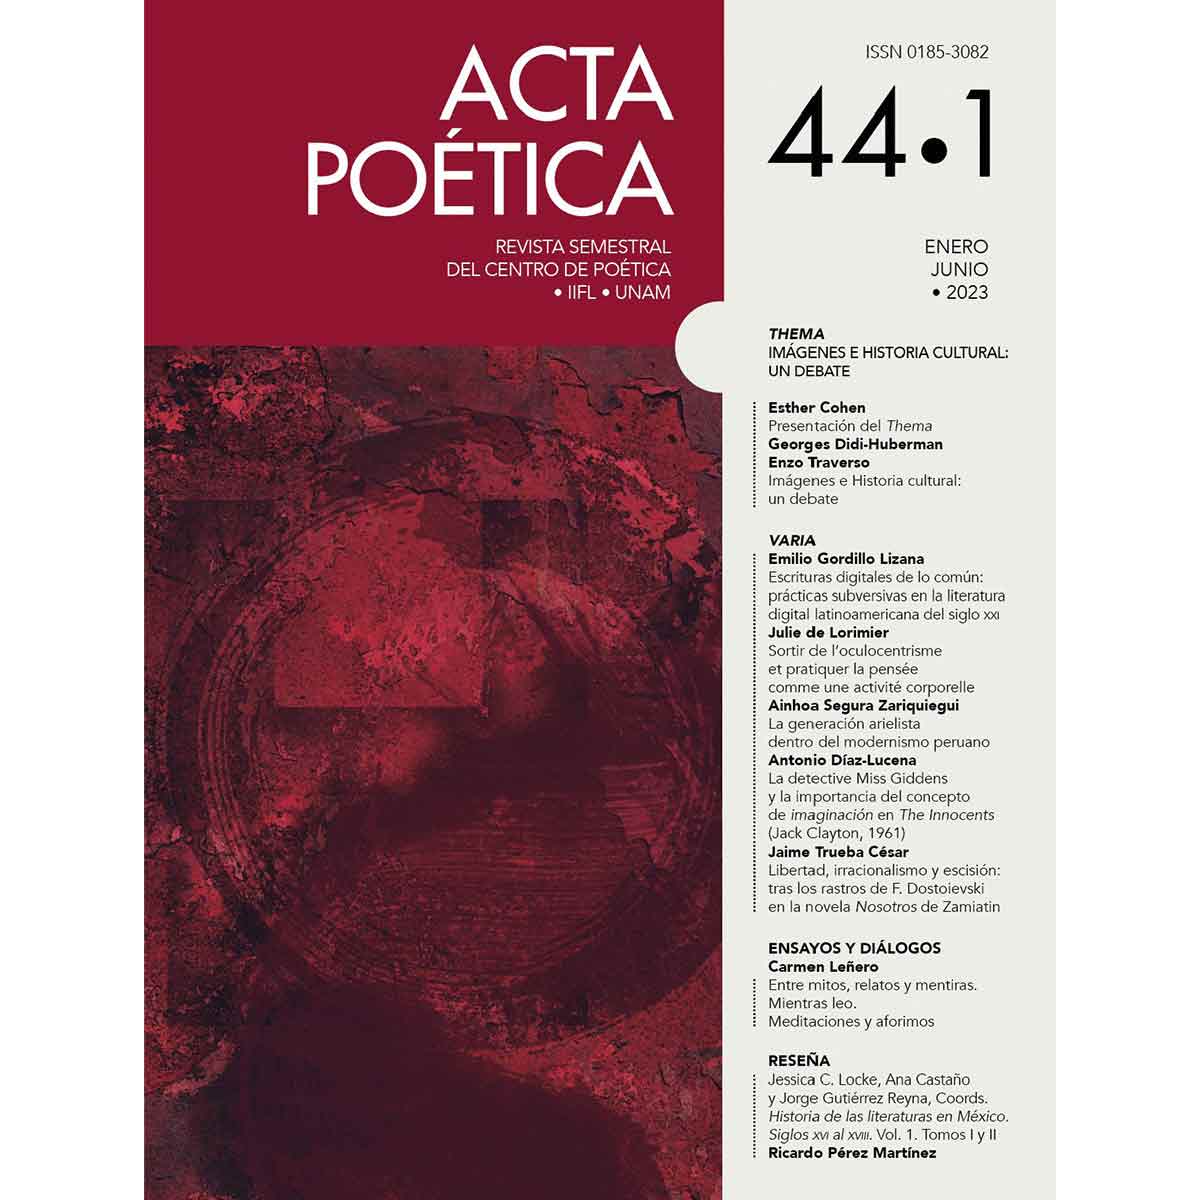 REVISTA ACTA POÉTICA VOL. 44 No. 1